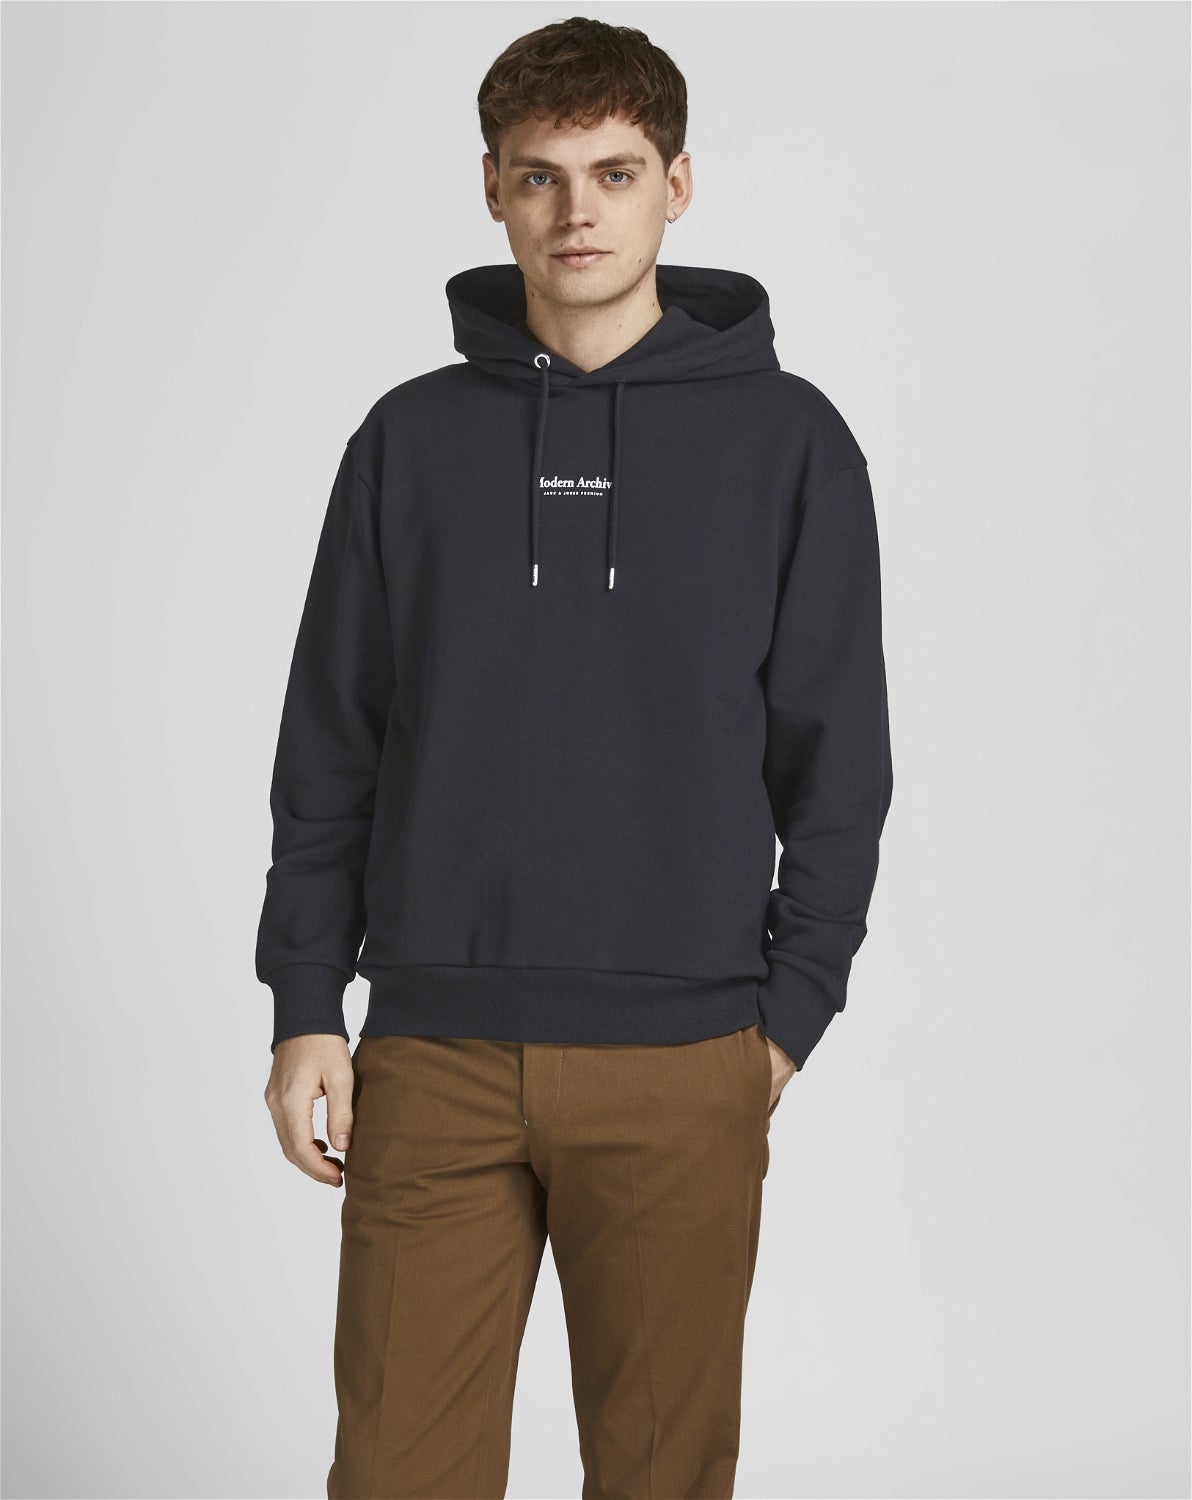 DAMEN Pullovers & Sweatshirts Hoodie Schwarz S Zara sweatshirt Rabatt 84 % 